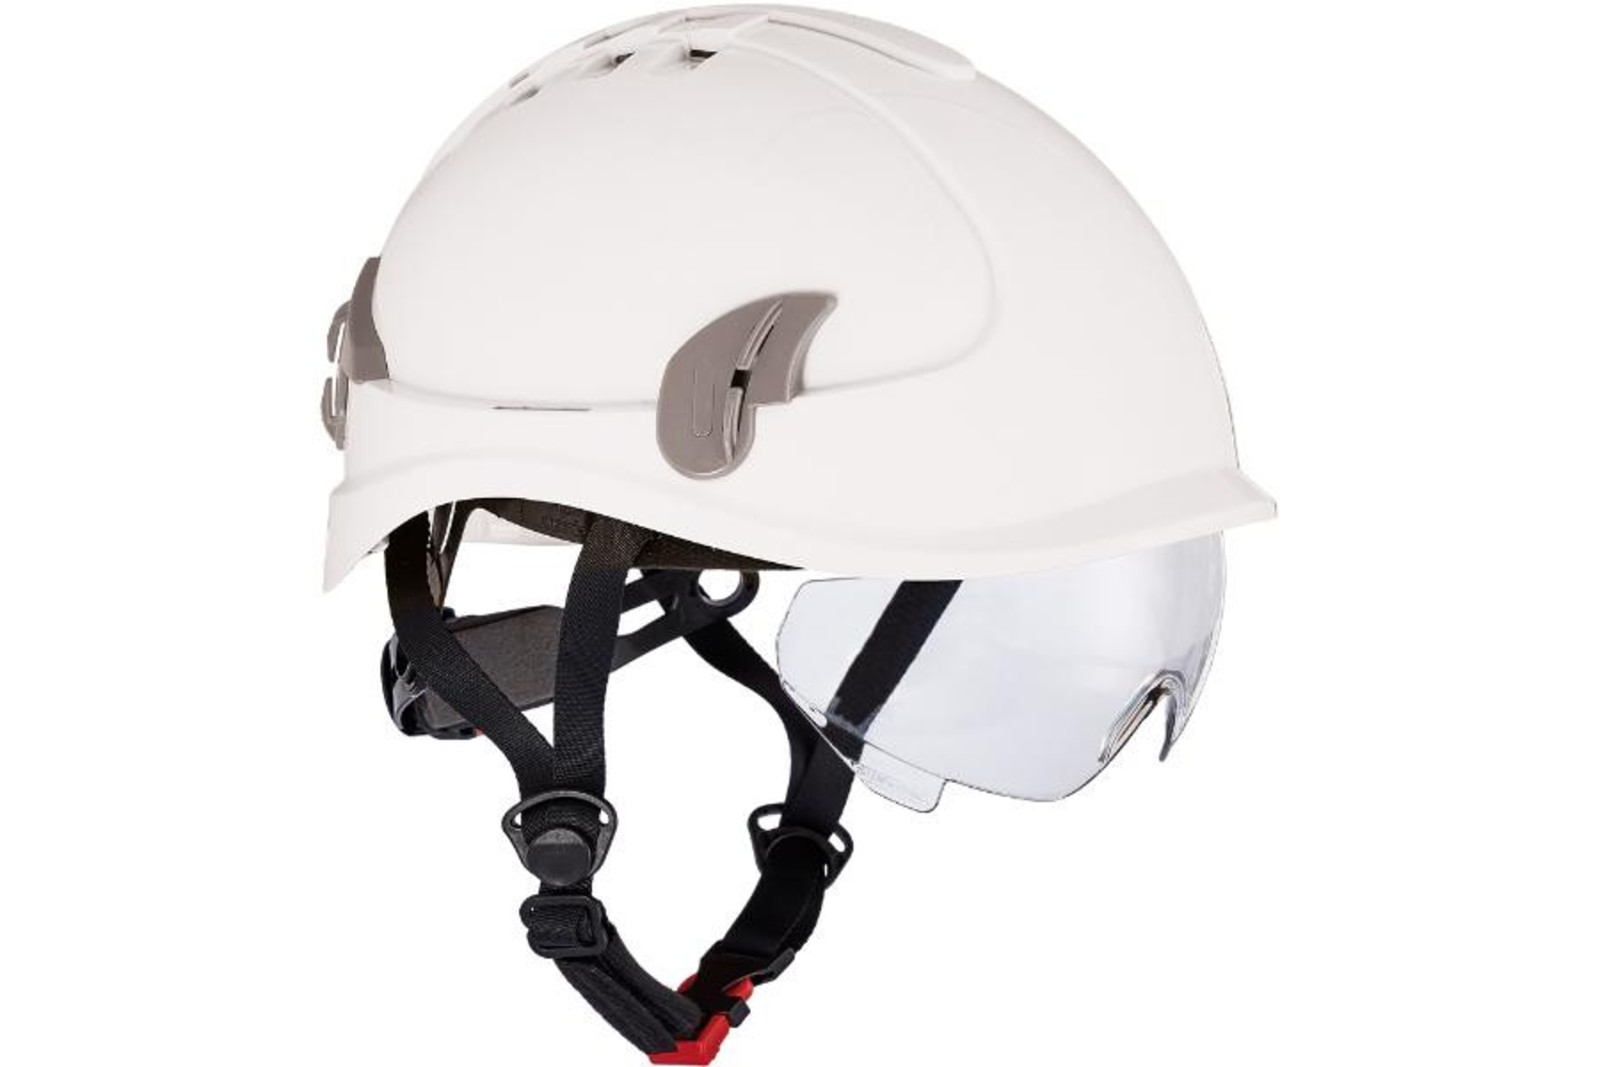 Ochranná prilba Alpinworker pre prácu vo výškach - farba: biela